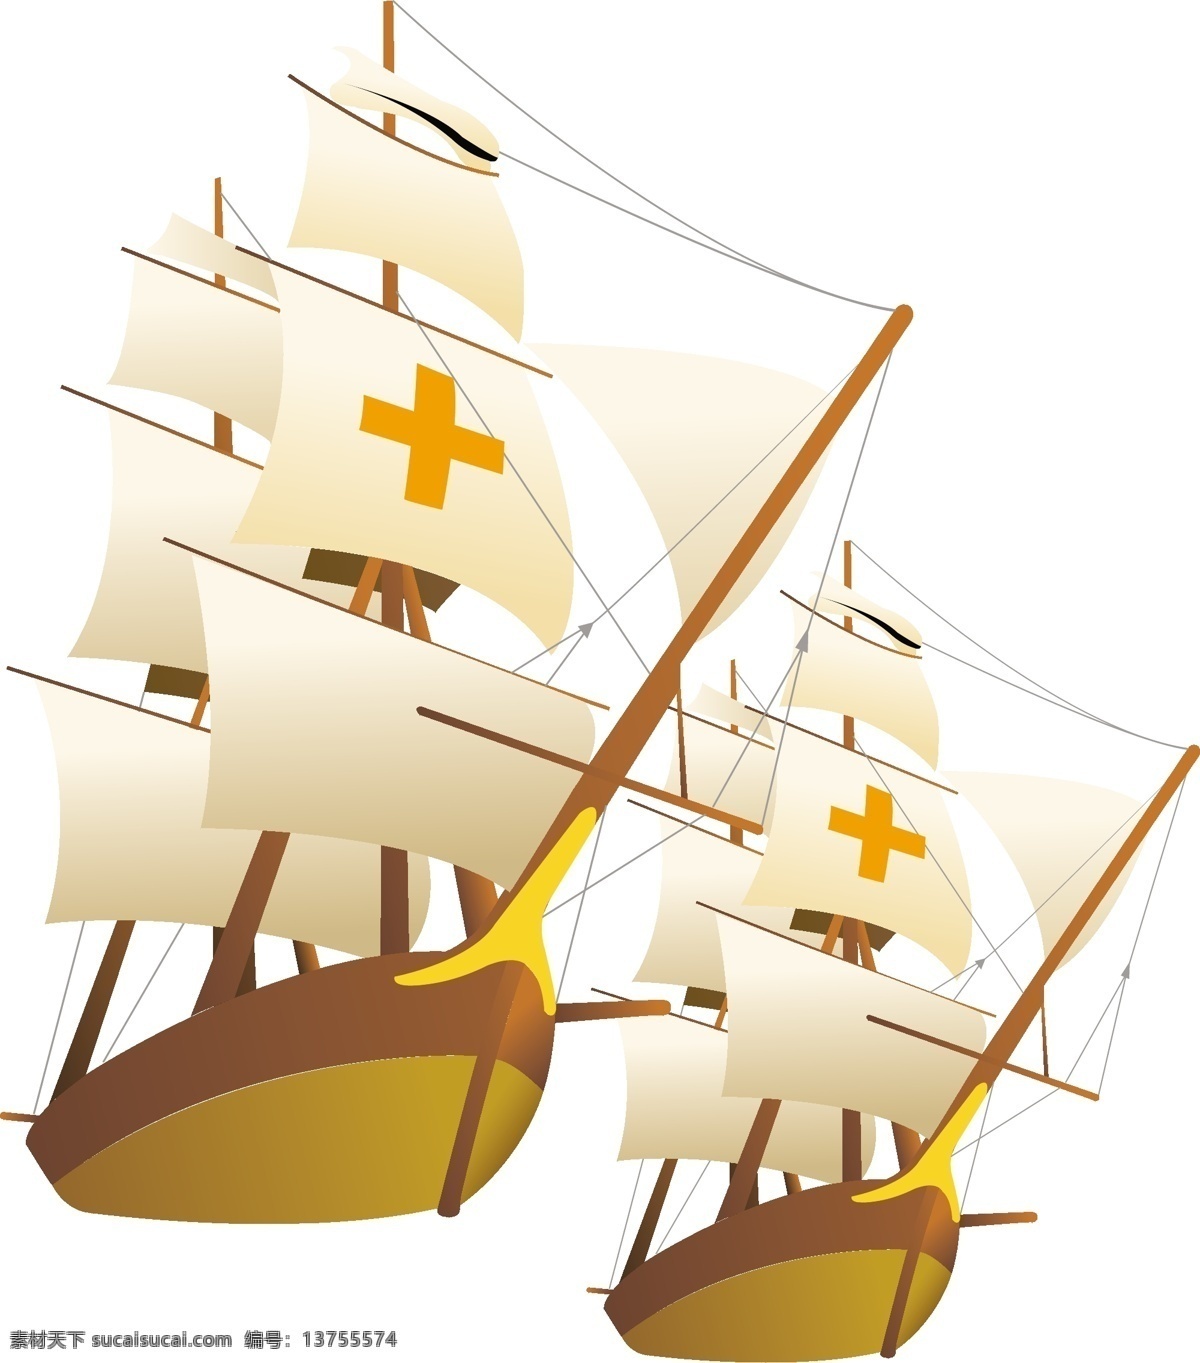 款 帆船 插画 古老 航行 红十字 模板 设计稿 素材元素 扬帆 源文件 矢量图